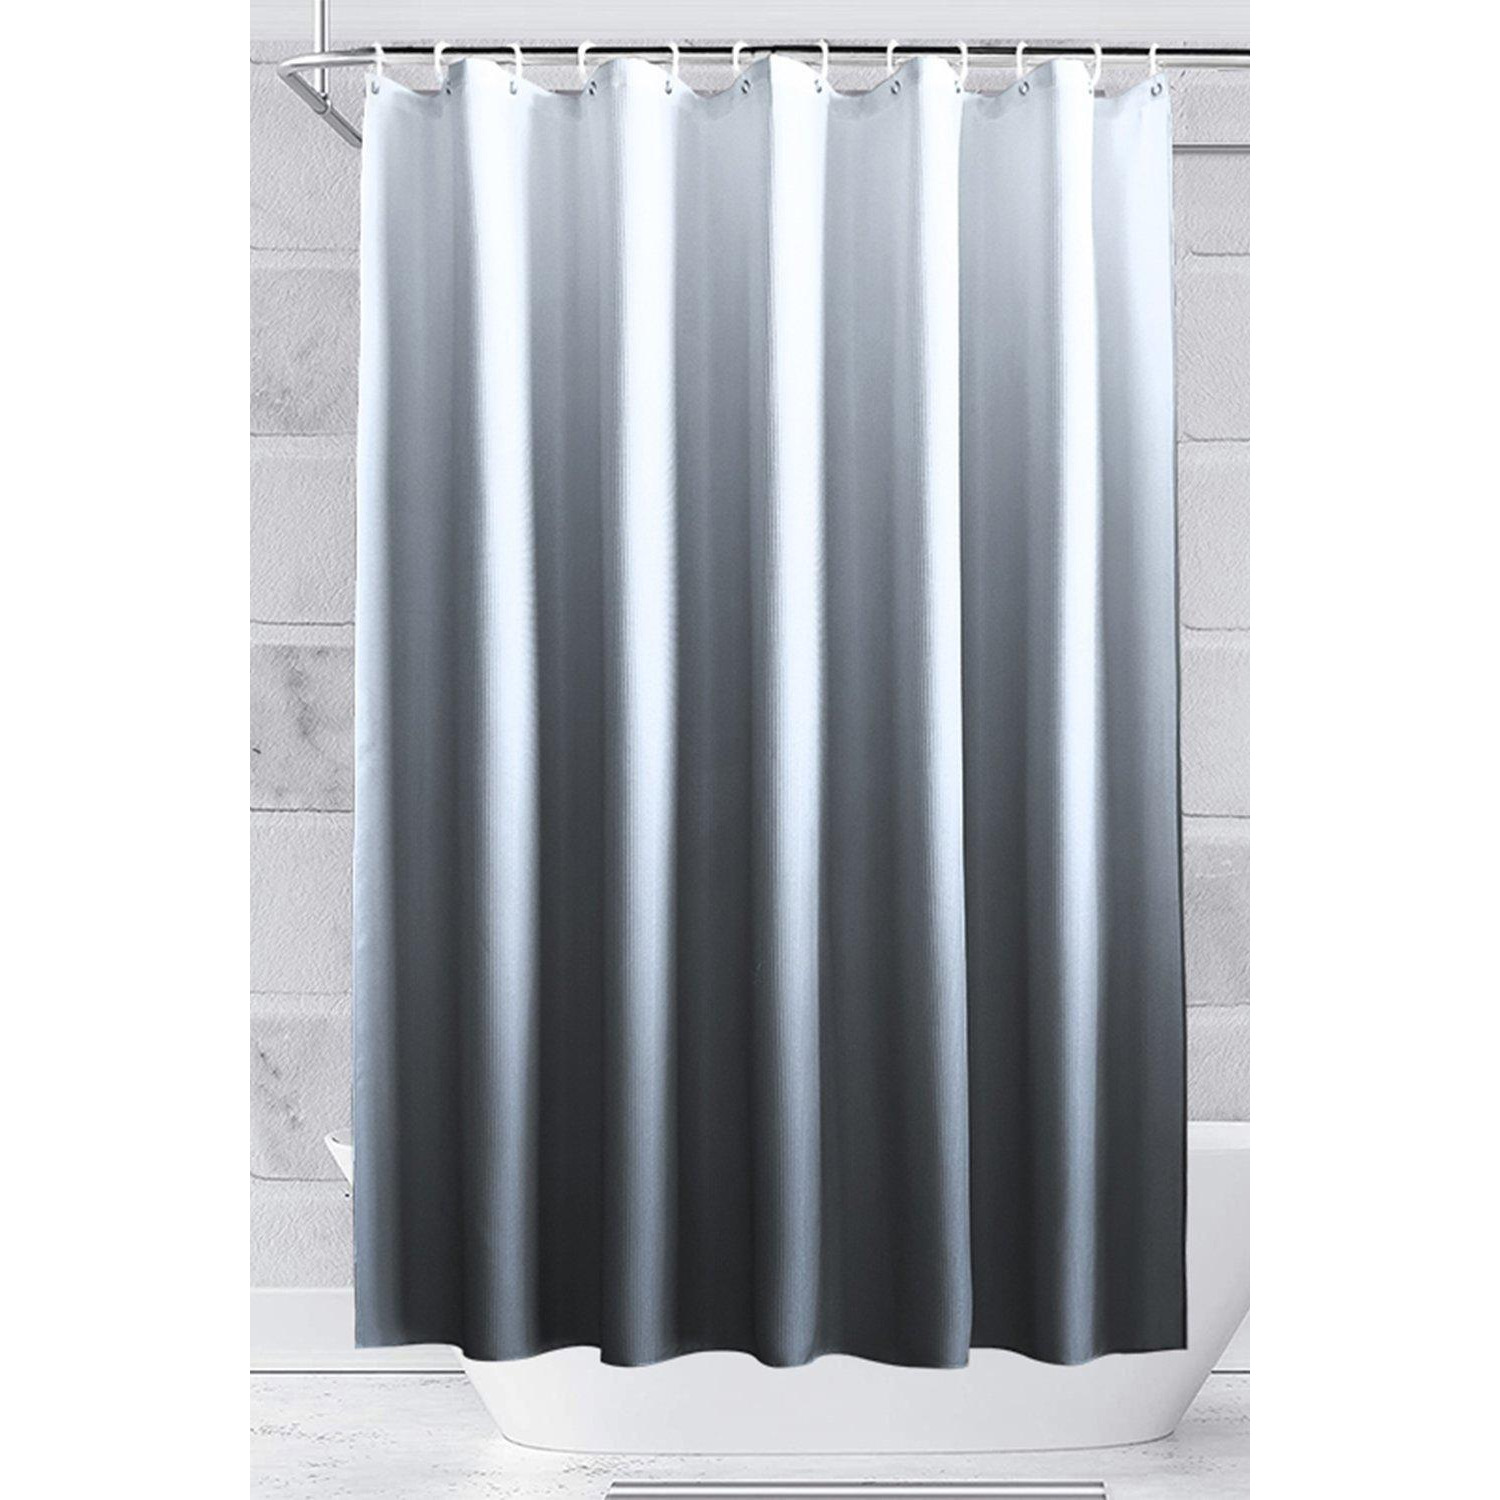 Gradient Colour Shower Curtain, Grey & White - 180cm x 200cm - image 1